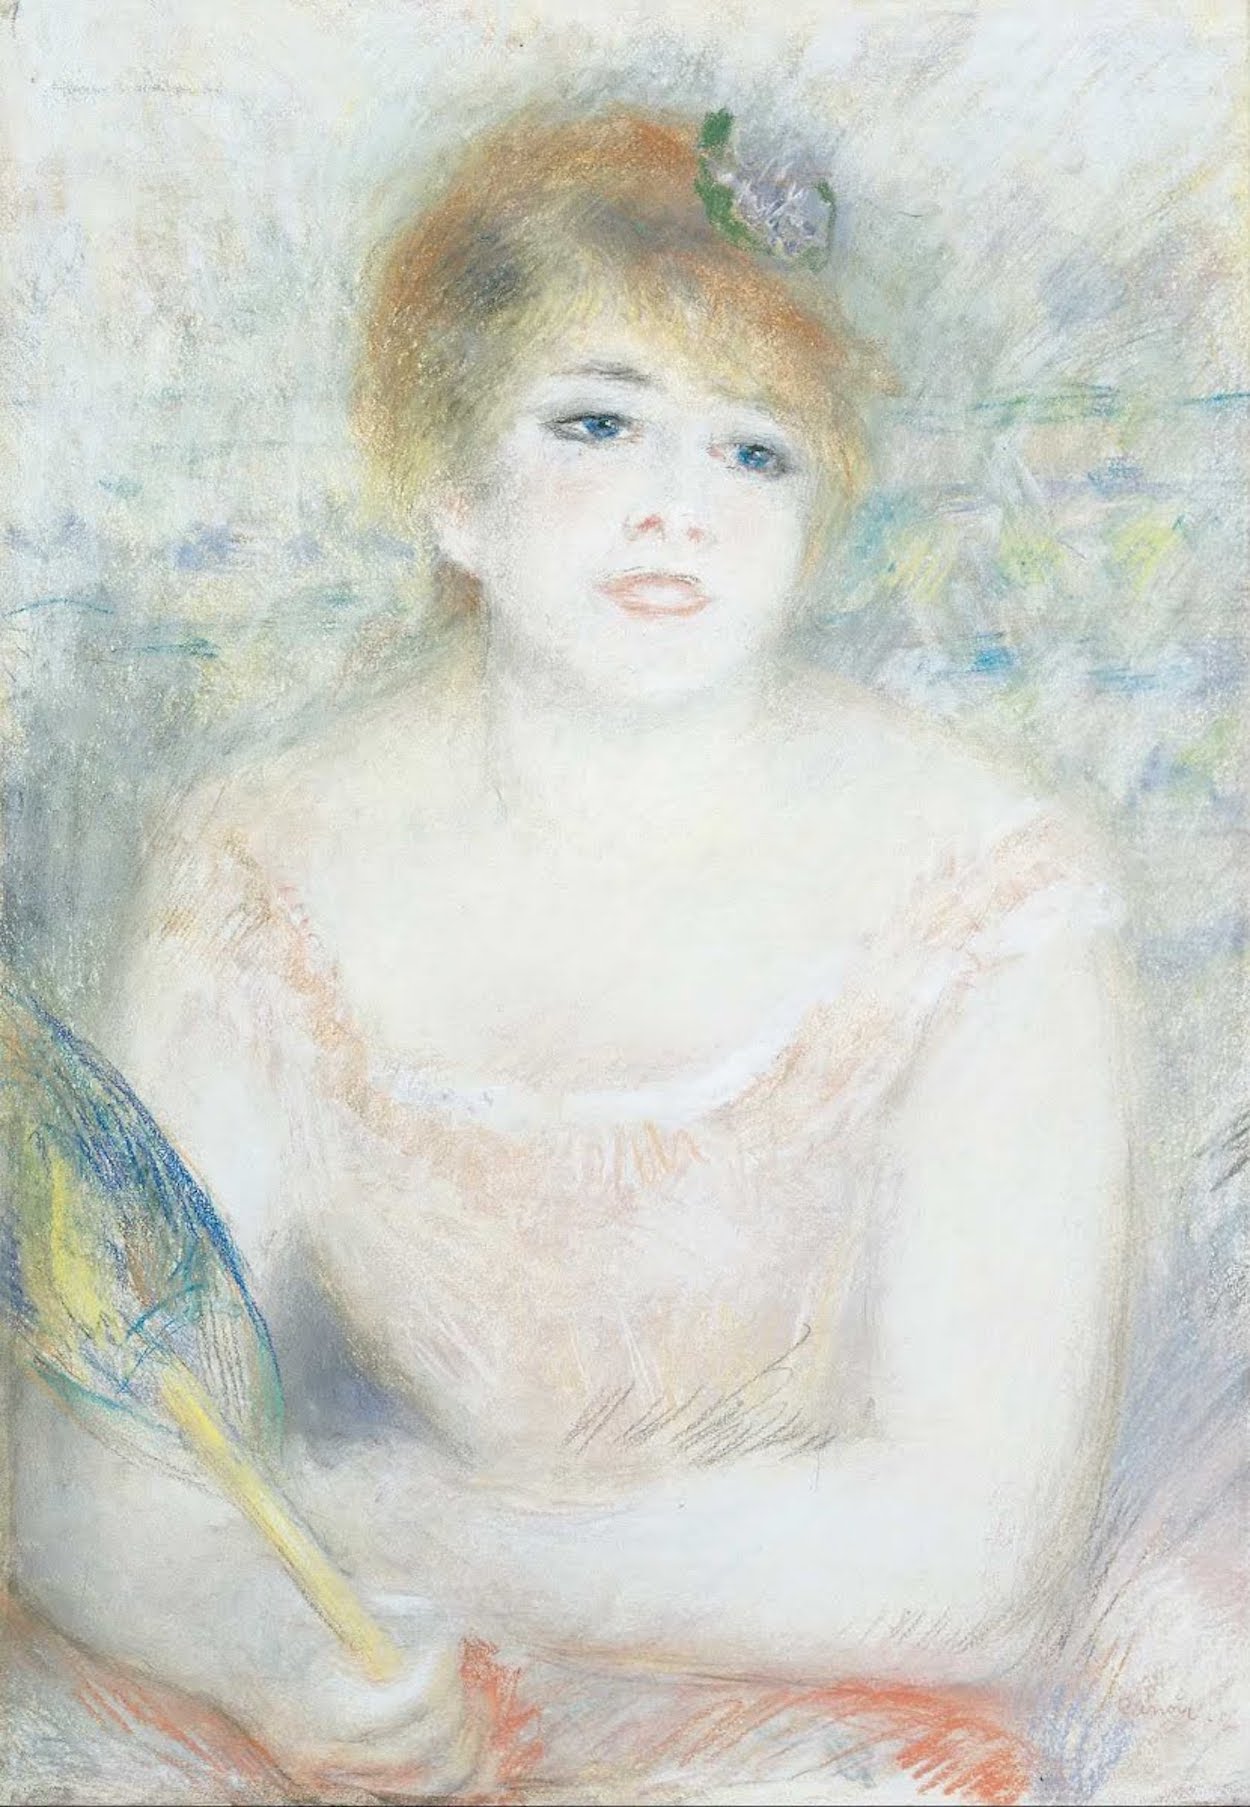 Mlle Jeanne Samary by Pierre-Auguste Renoir - ca. 1878 - 69.7 x 47.7 cm Cincinnati Art Museum